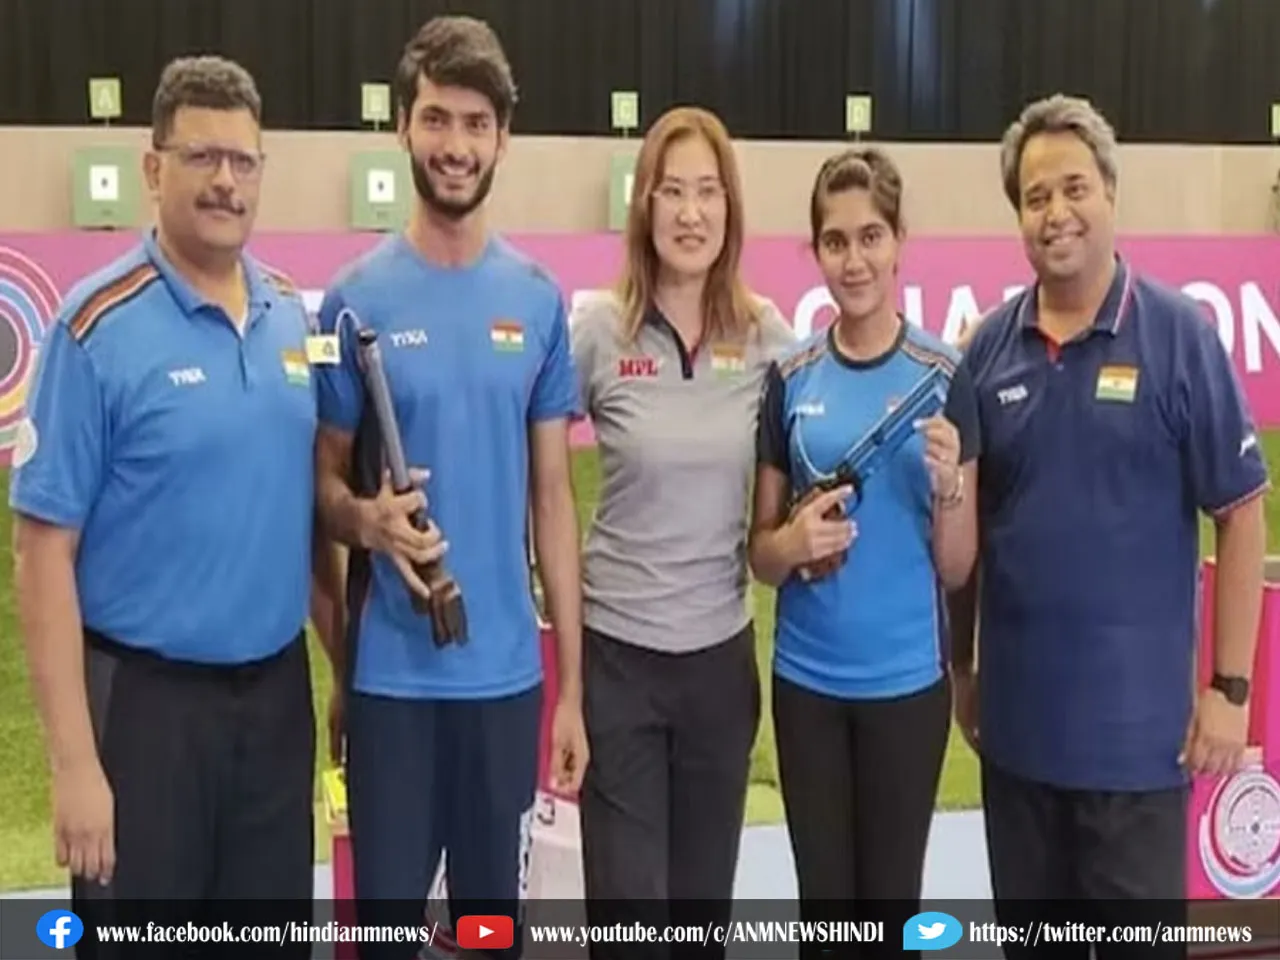 ISSF World Championships : भारतीय खेमे को कर दिया खुश, दूसरे स्थान पर चल रहा है भारत